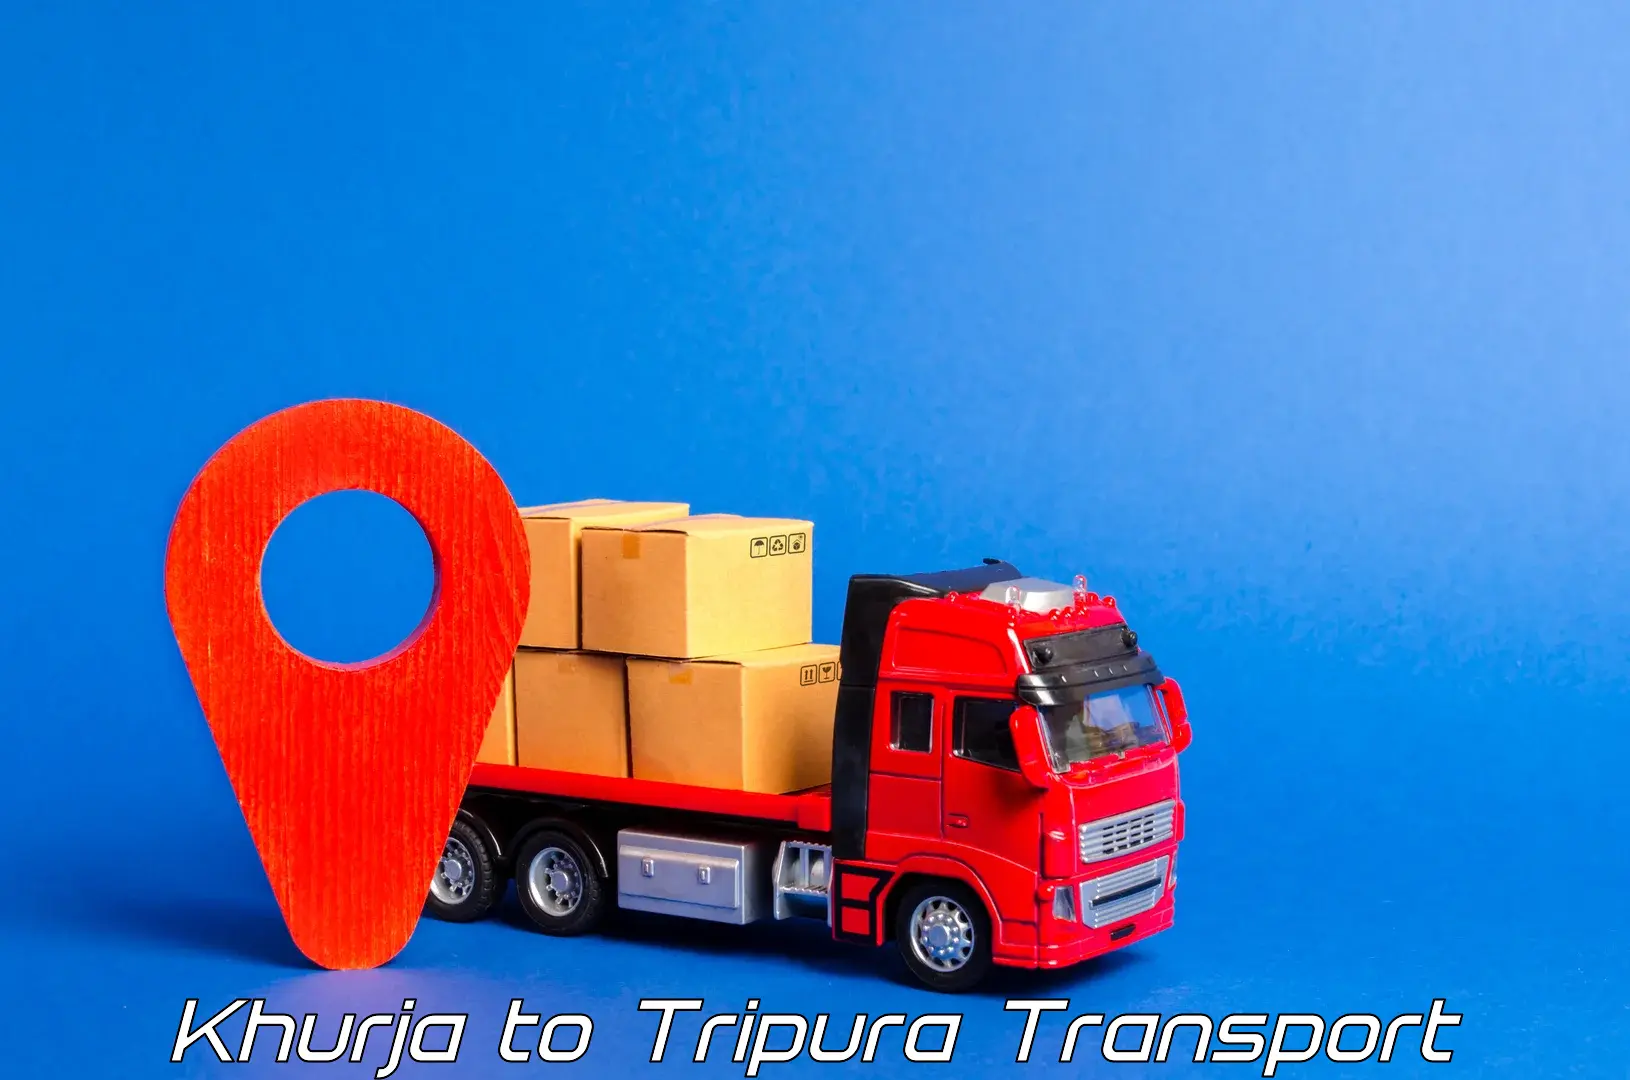 Furniture transport service Khurja to Bishalgarh